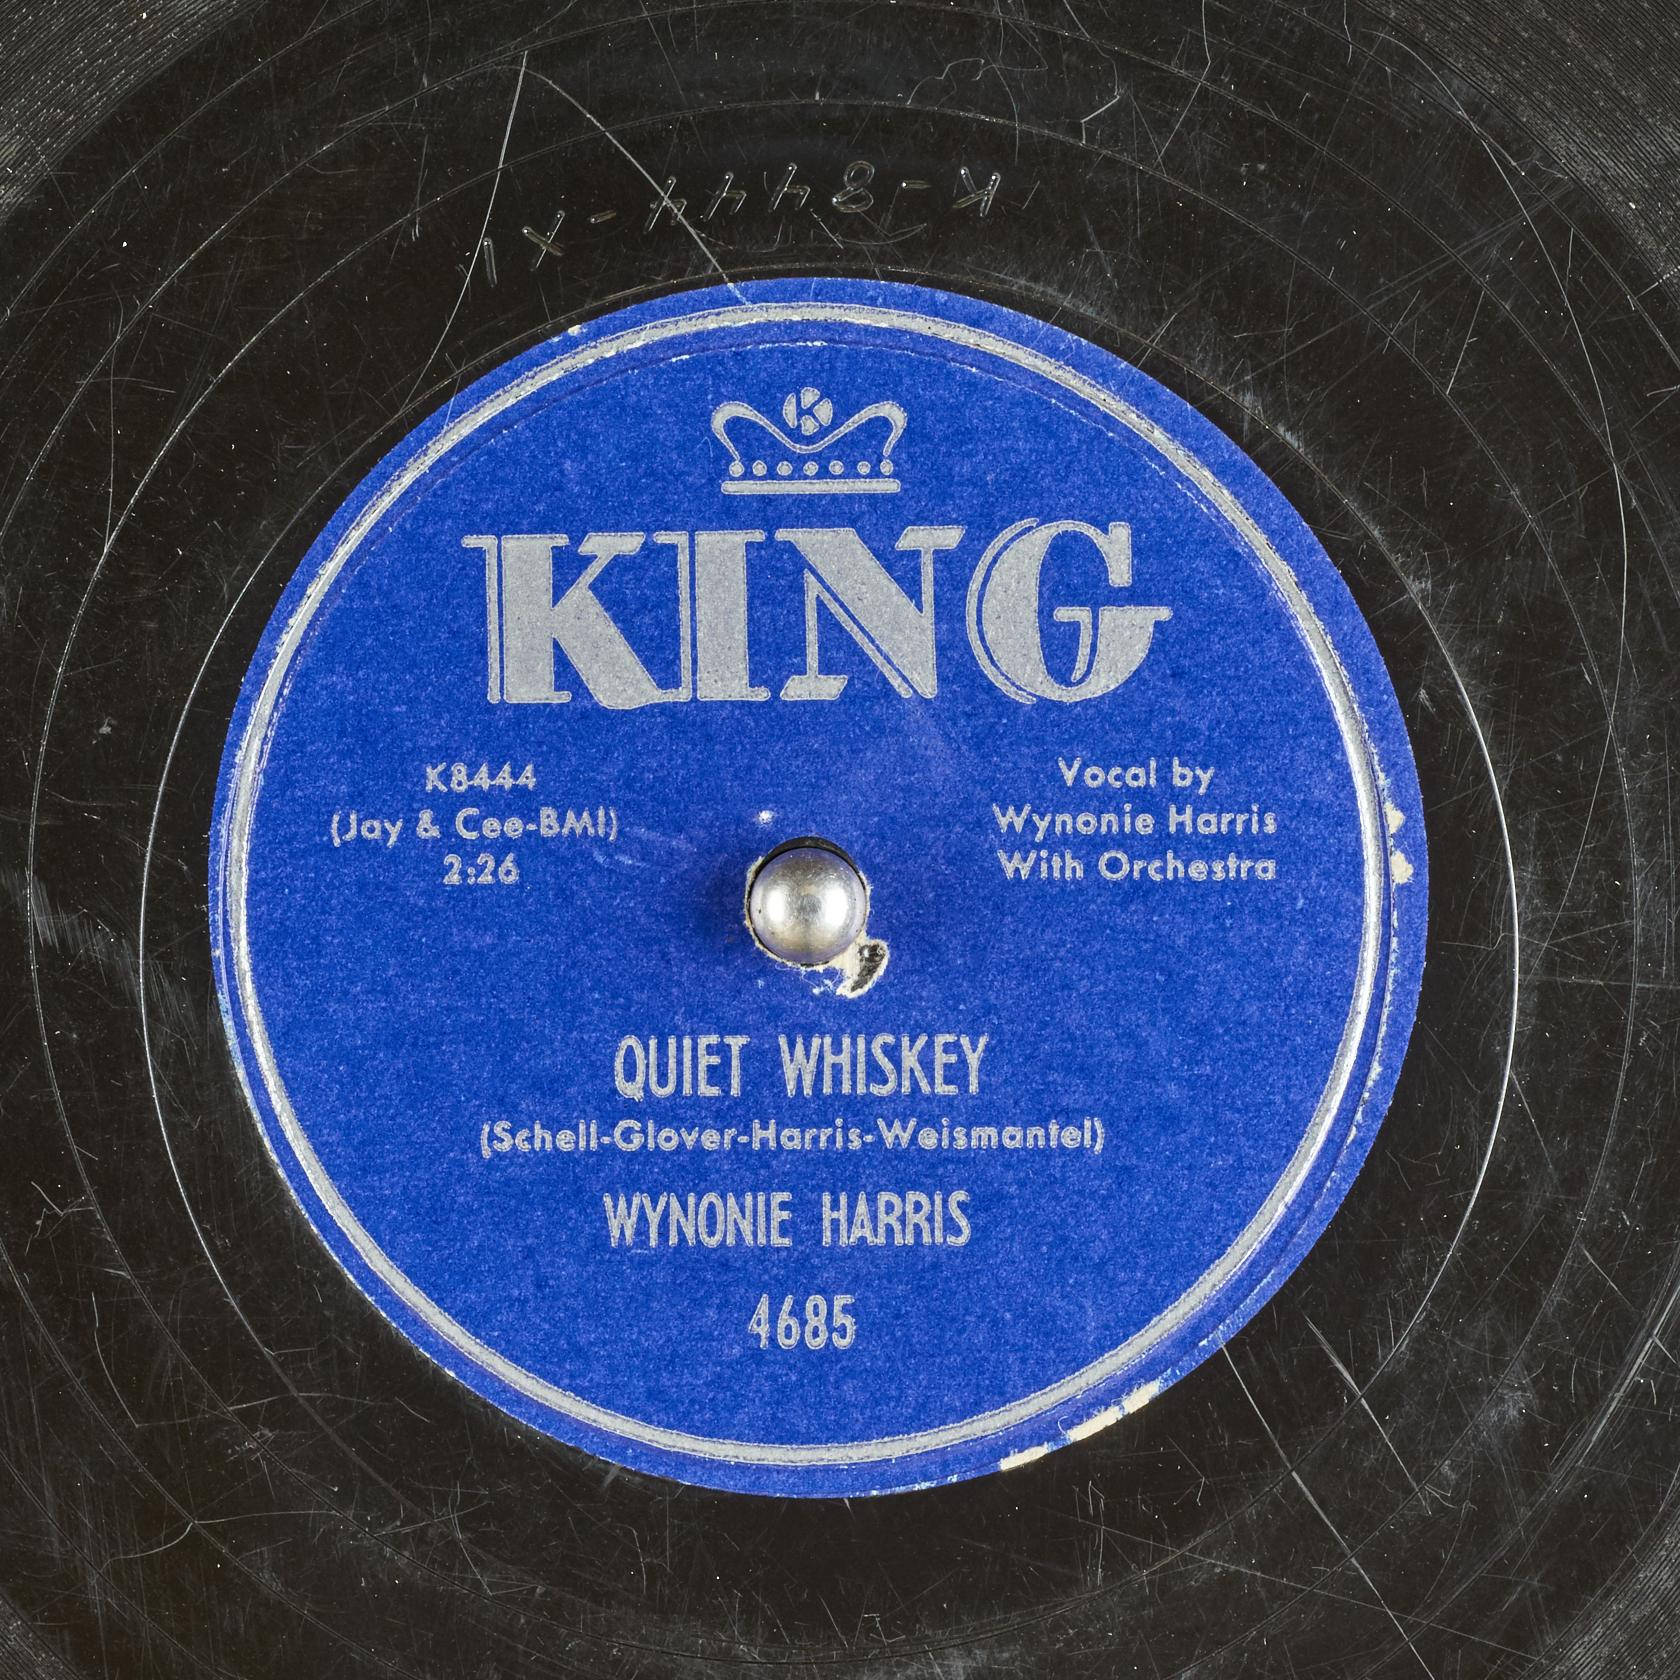 Wynonieharris Quiet Whiskey Vinyl Record - Wynonie Harris Quiet Whiskey Vinylskiva. Wallpaper